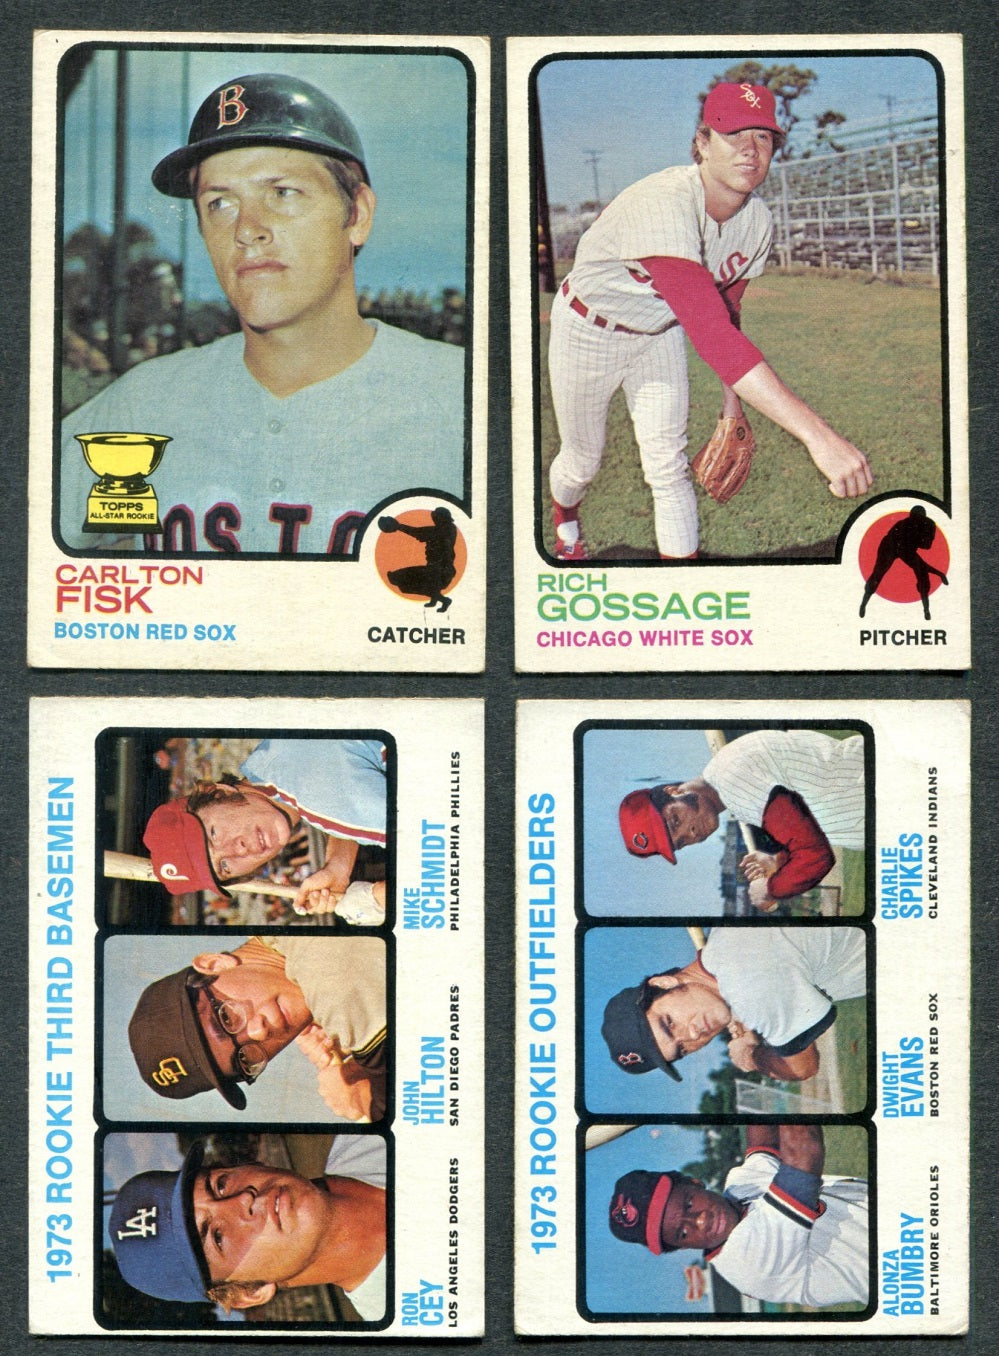 1973 Topps Baseball Complete Set VG (660) (23-250)